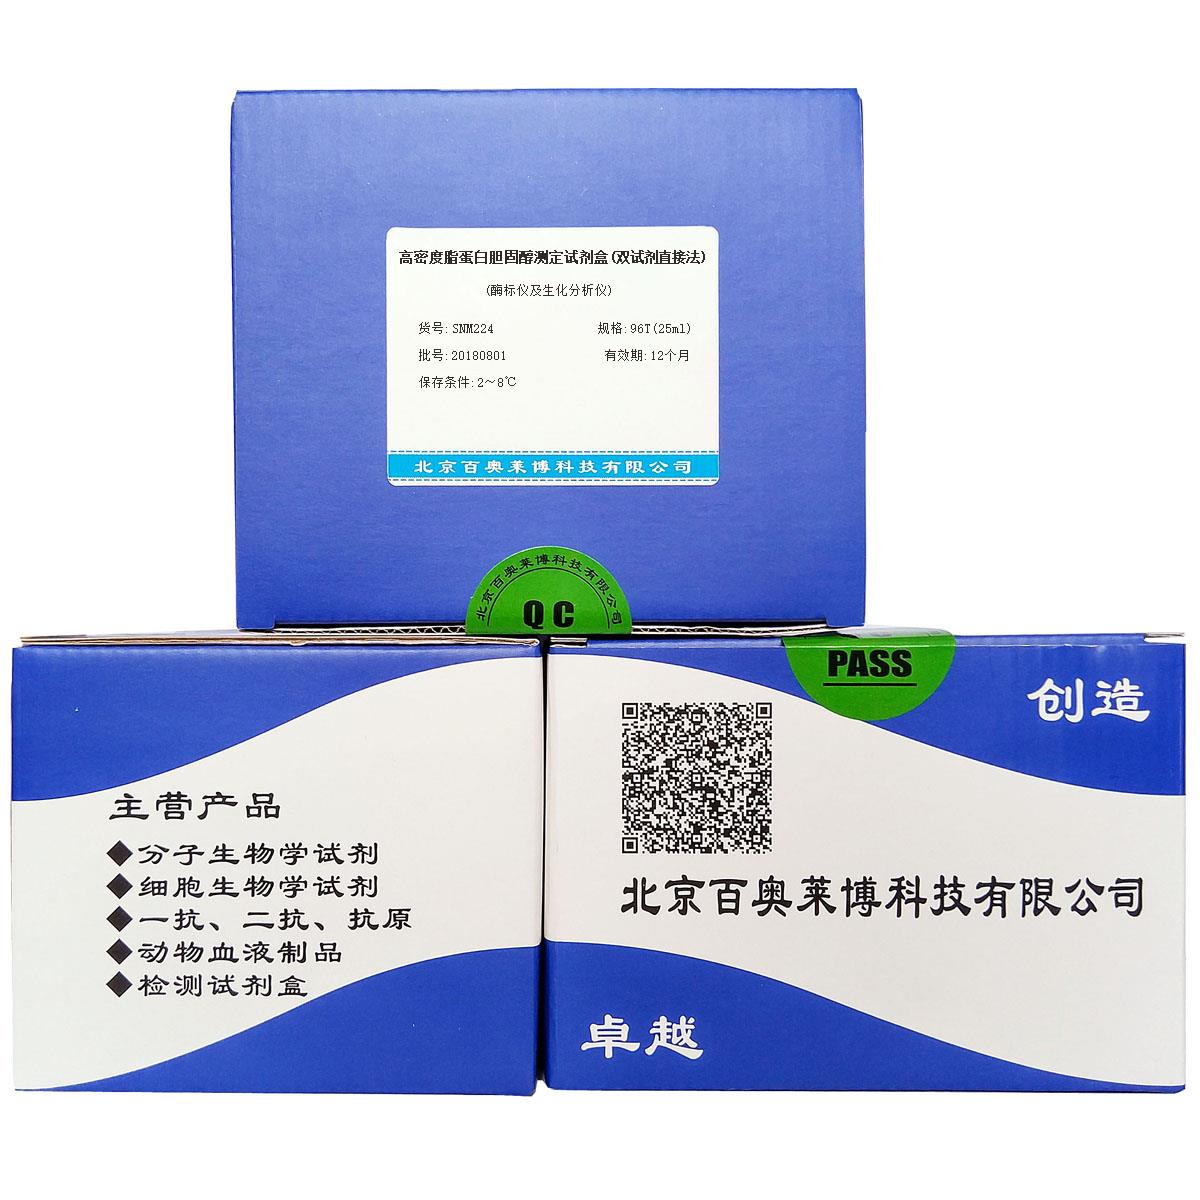 高密度脂蛋白胆固醇测定试剂盒(双试剂直接法)(酶标仪及生化分析仪)